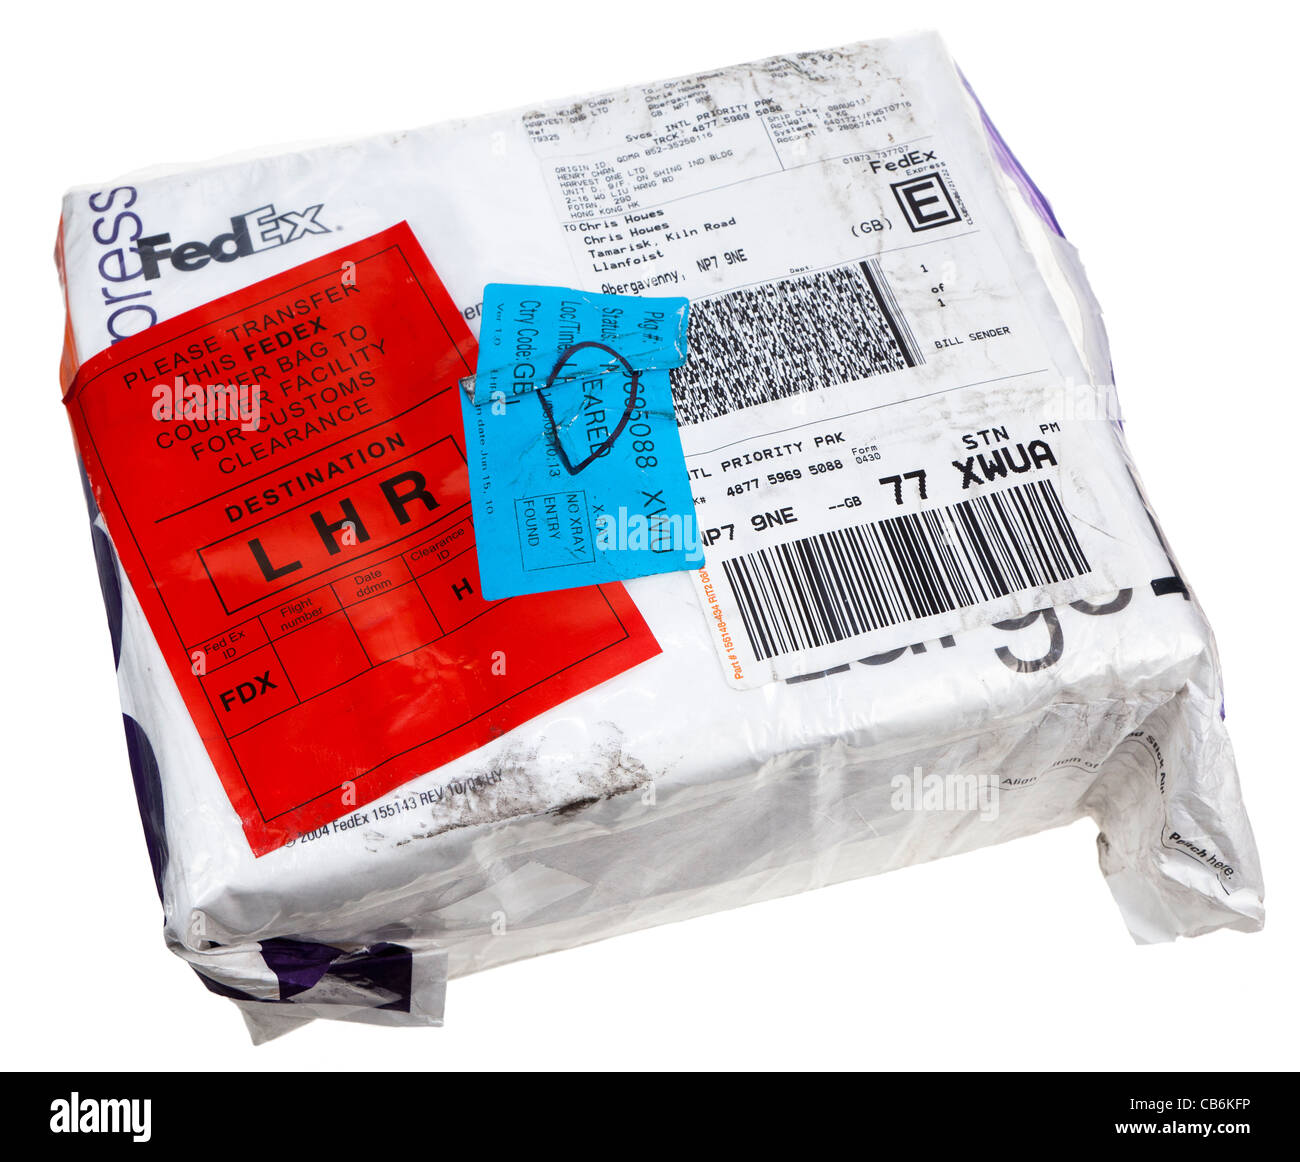 Internationalen Paket geliefert von Fedex mit Luftpost Customs Clearance Aufkleber UK Stockfoto